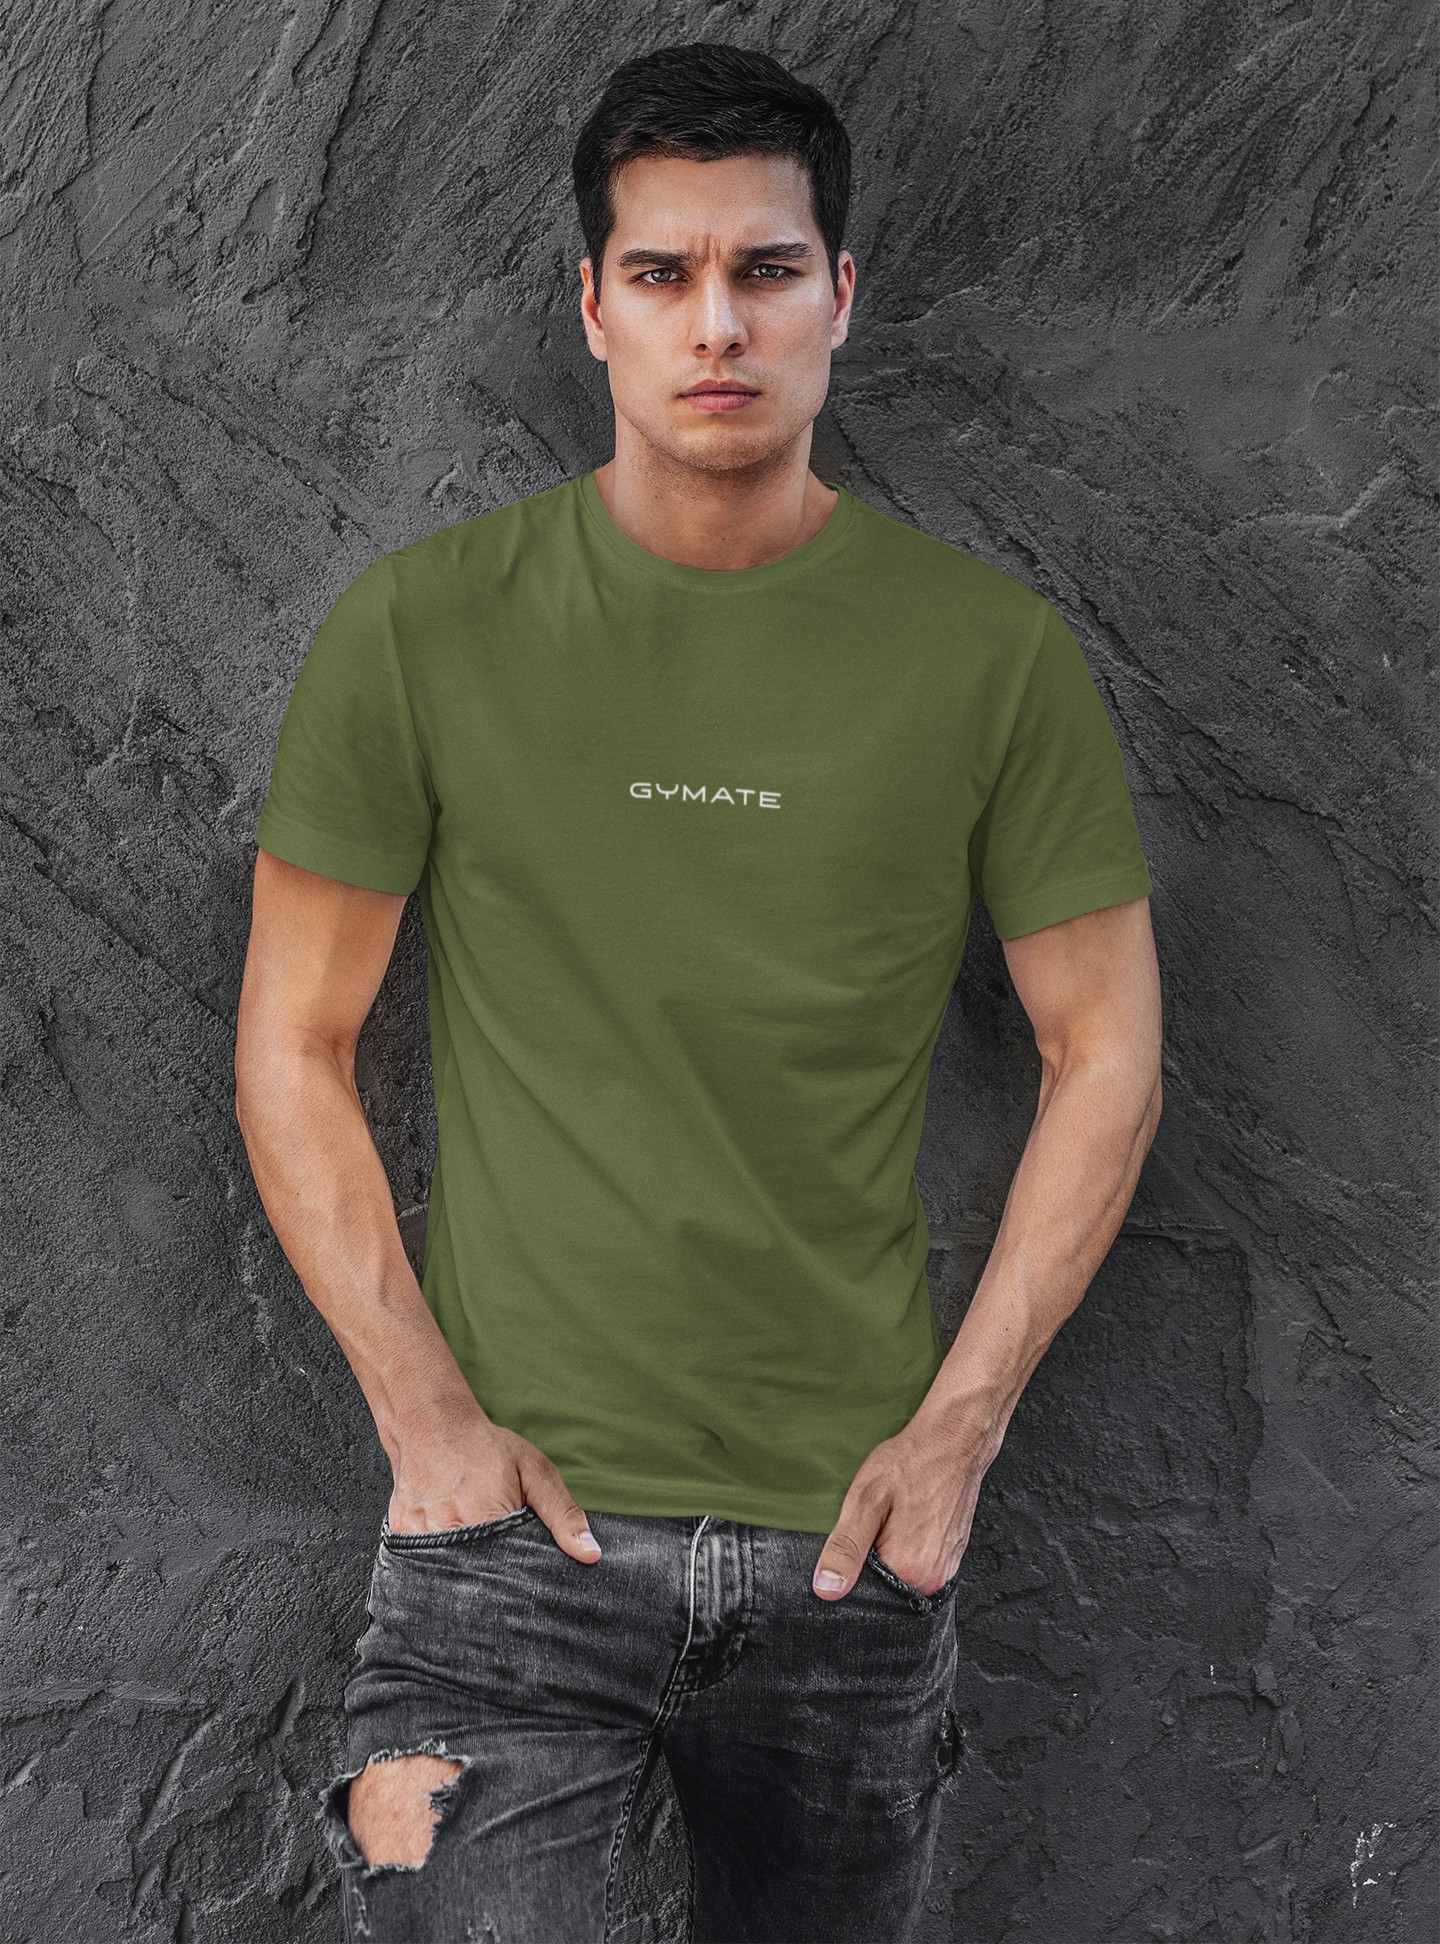 Designer mens T shirts Original Gymate sml/ctr green